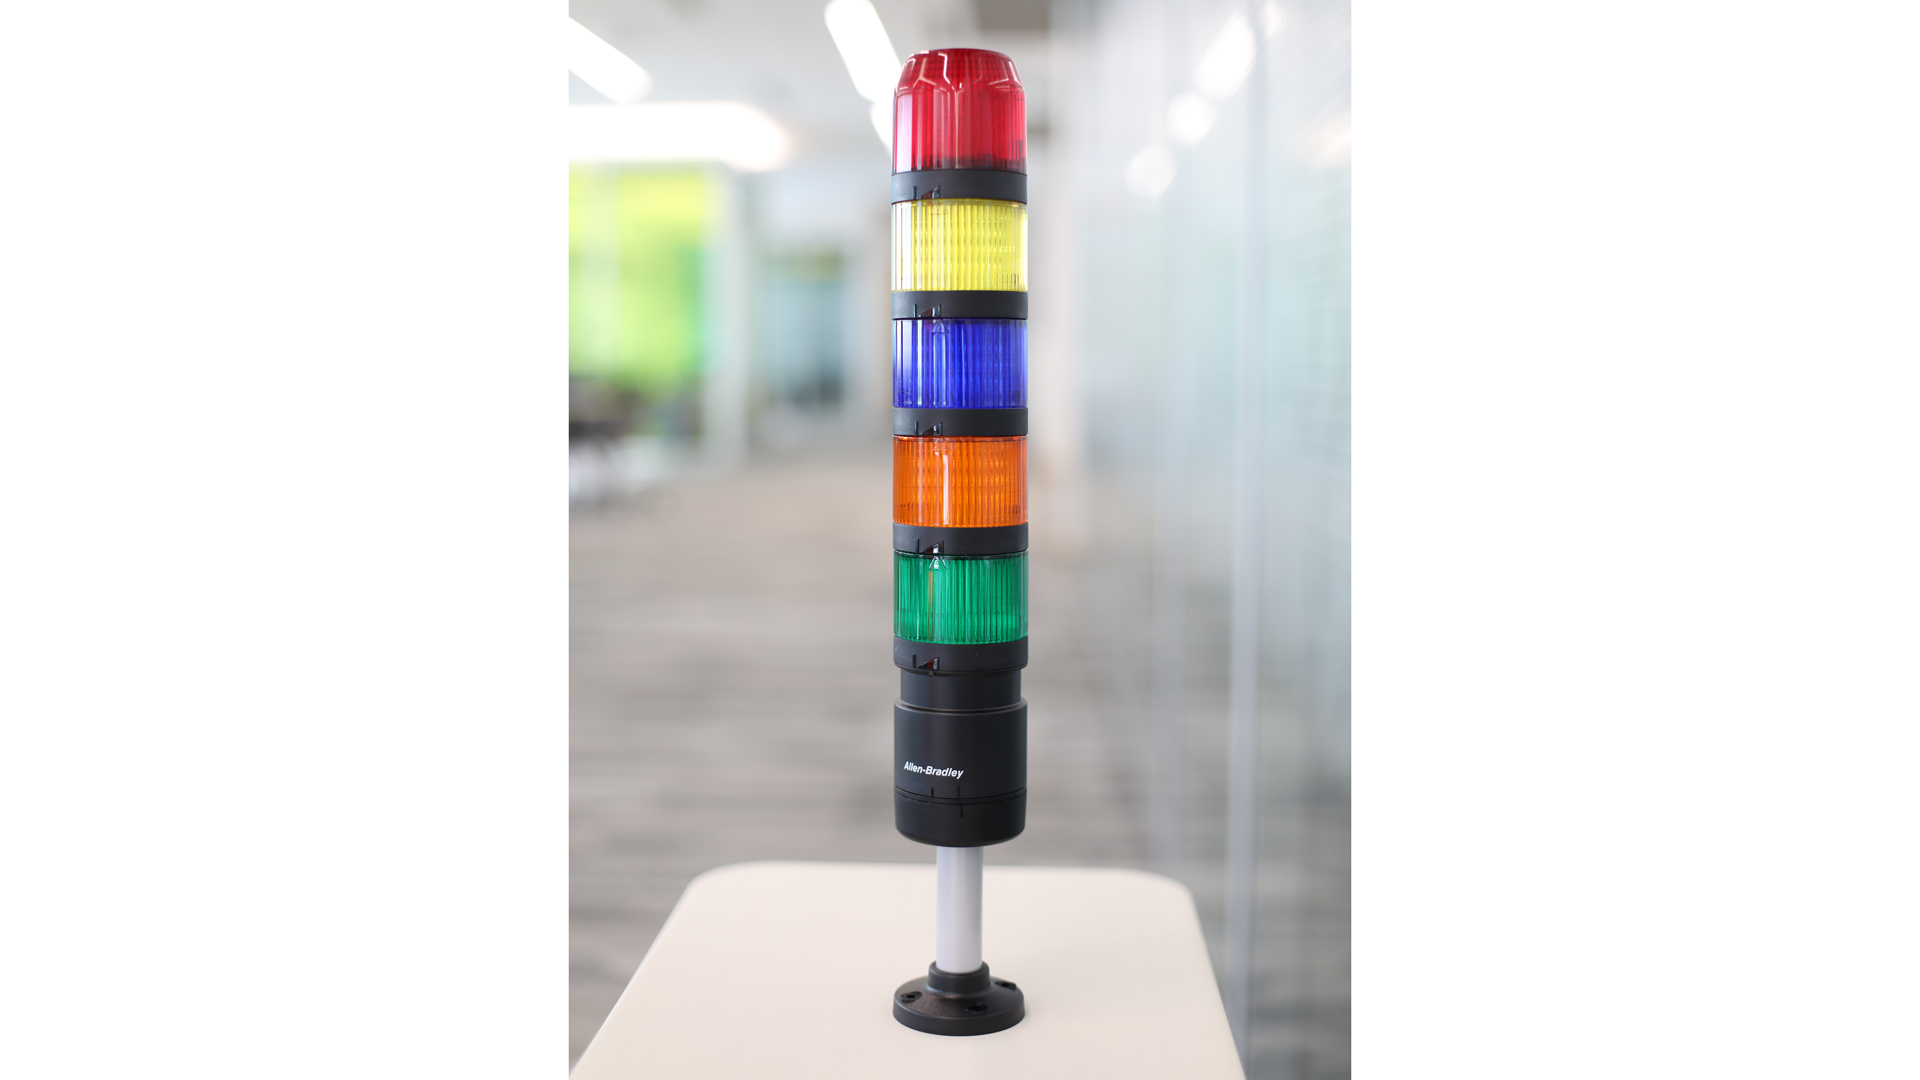 表のIO-リンクスタックライト- 上から下 - 赤、黄色、青、アンバーおよび緑の点灯していないライトモジュール、黒のポール取付け 